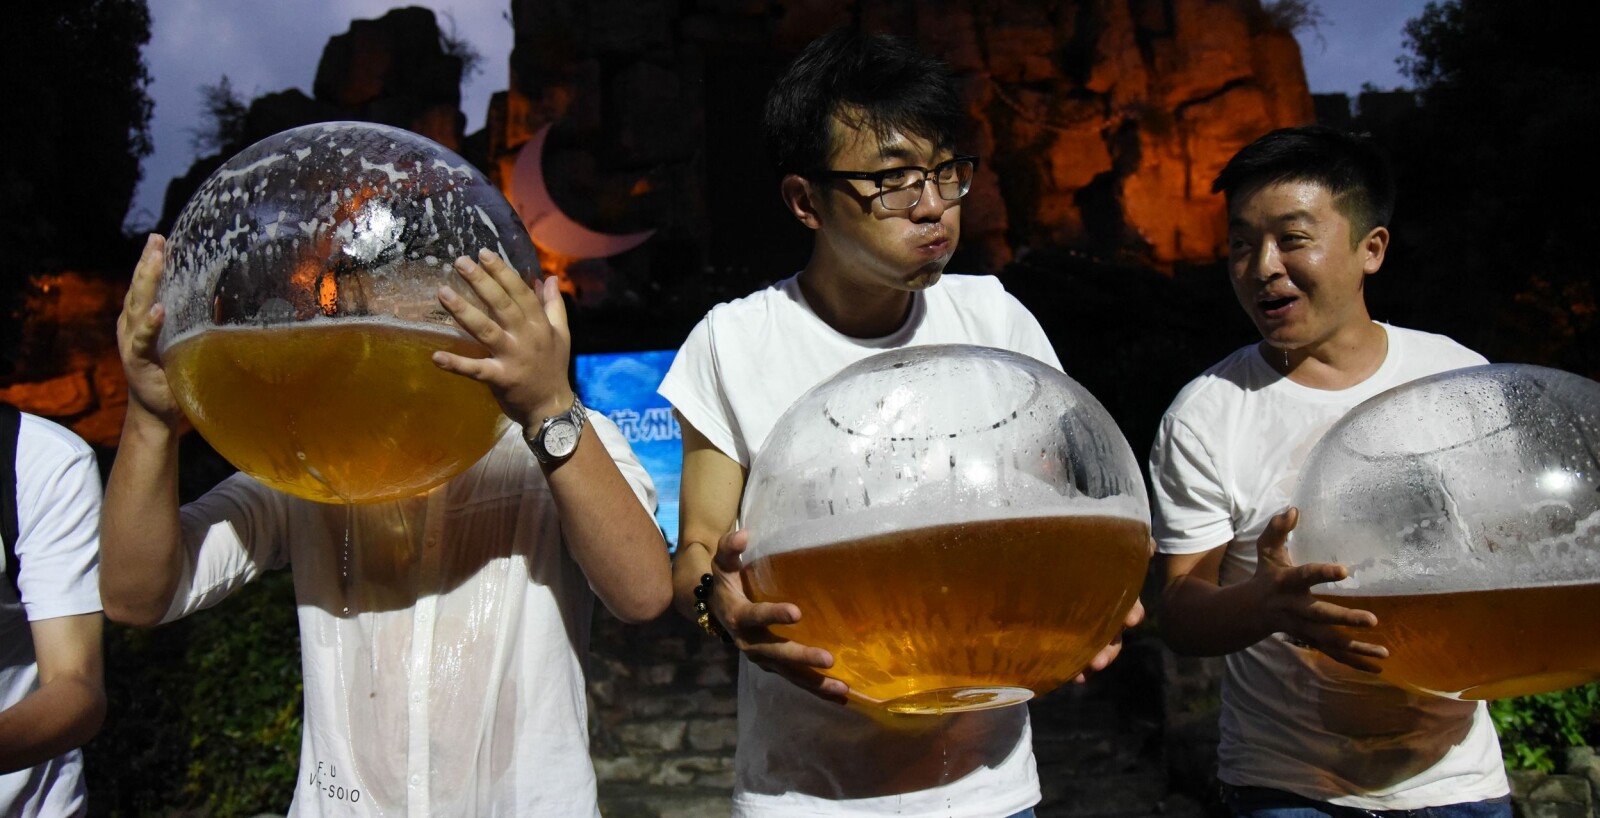 <b>VERDENS STØRSTE ØLMERKE:</b> Kina er stort og folket er glad i øl. Kinesiske Snow er verdens største ølmerke.